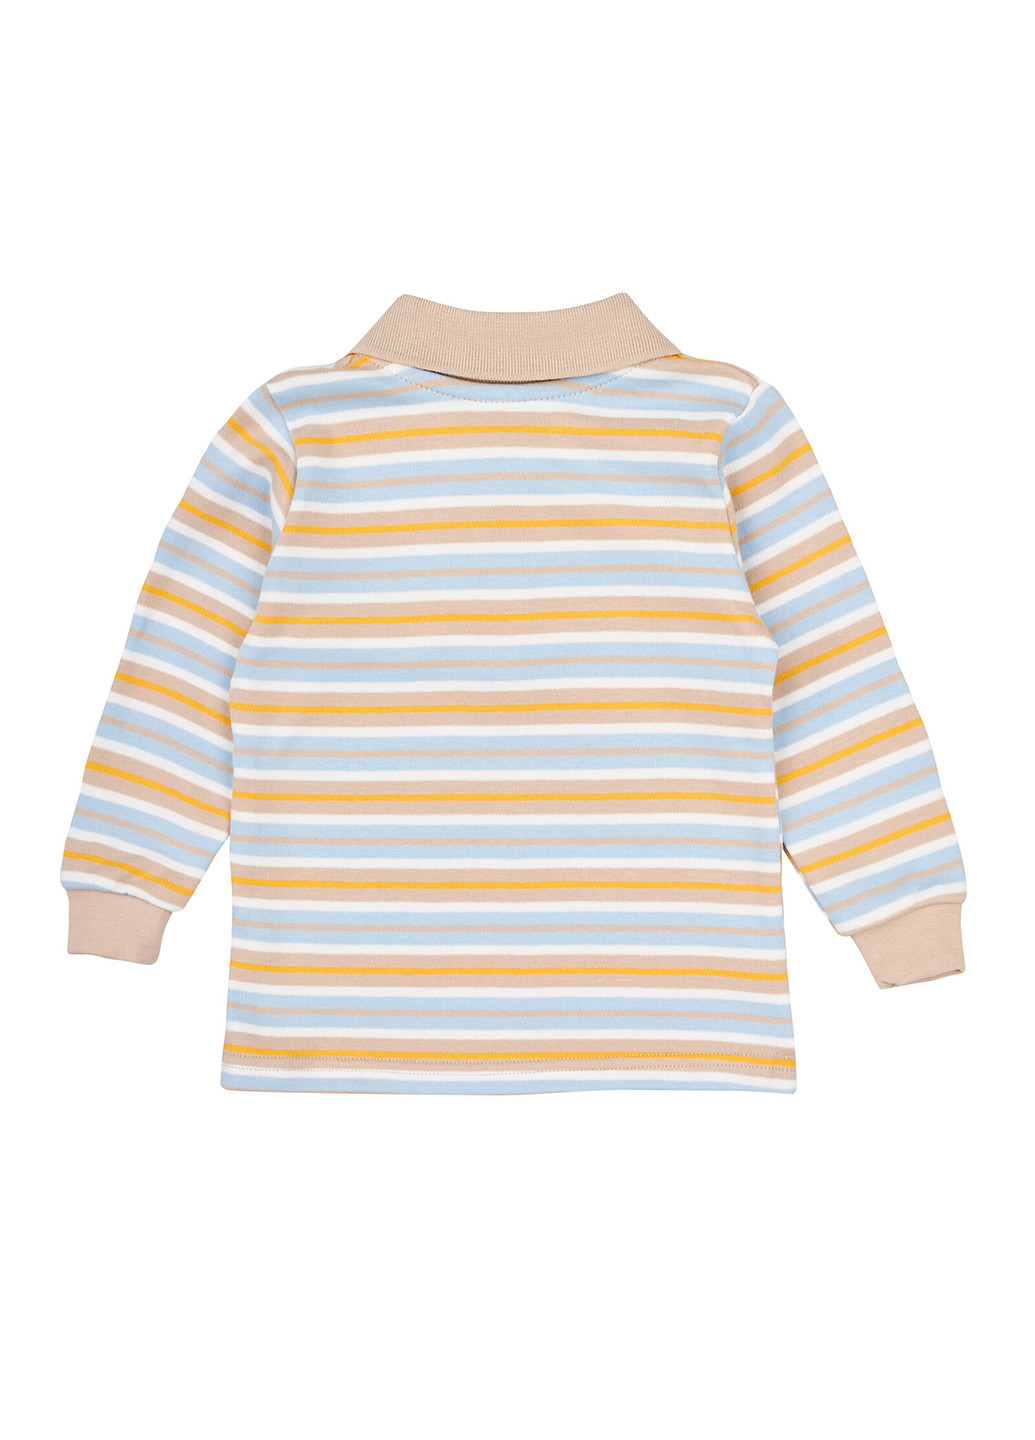 Цветная детская футболка-поло для мальчика Z16 в полоску